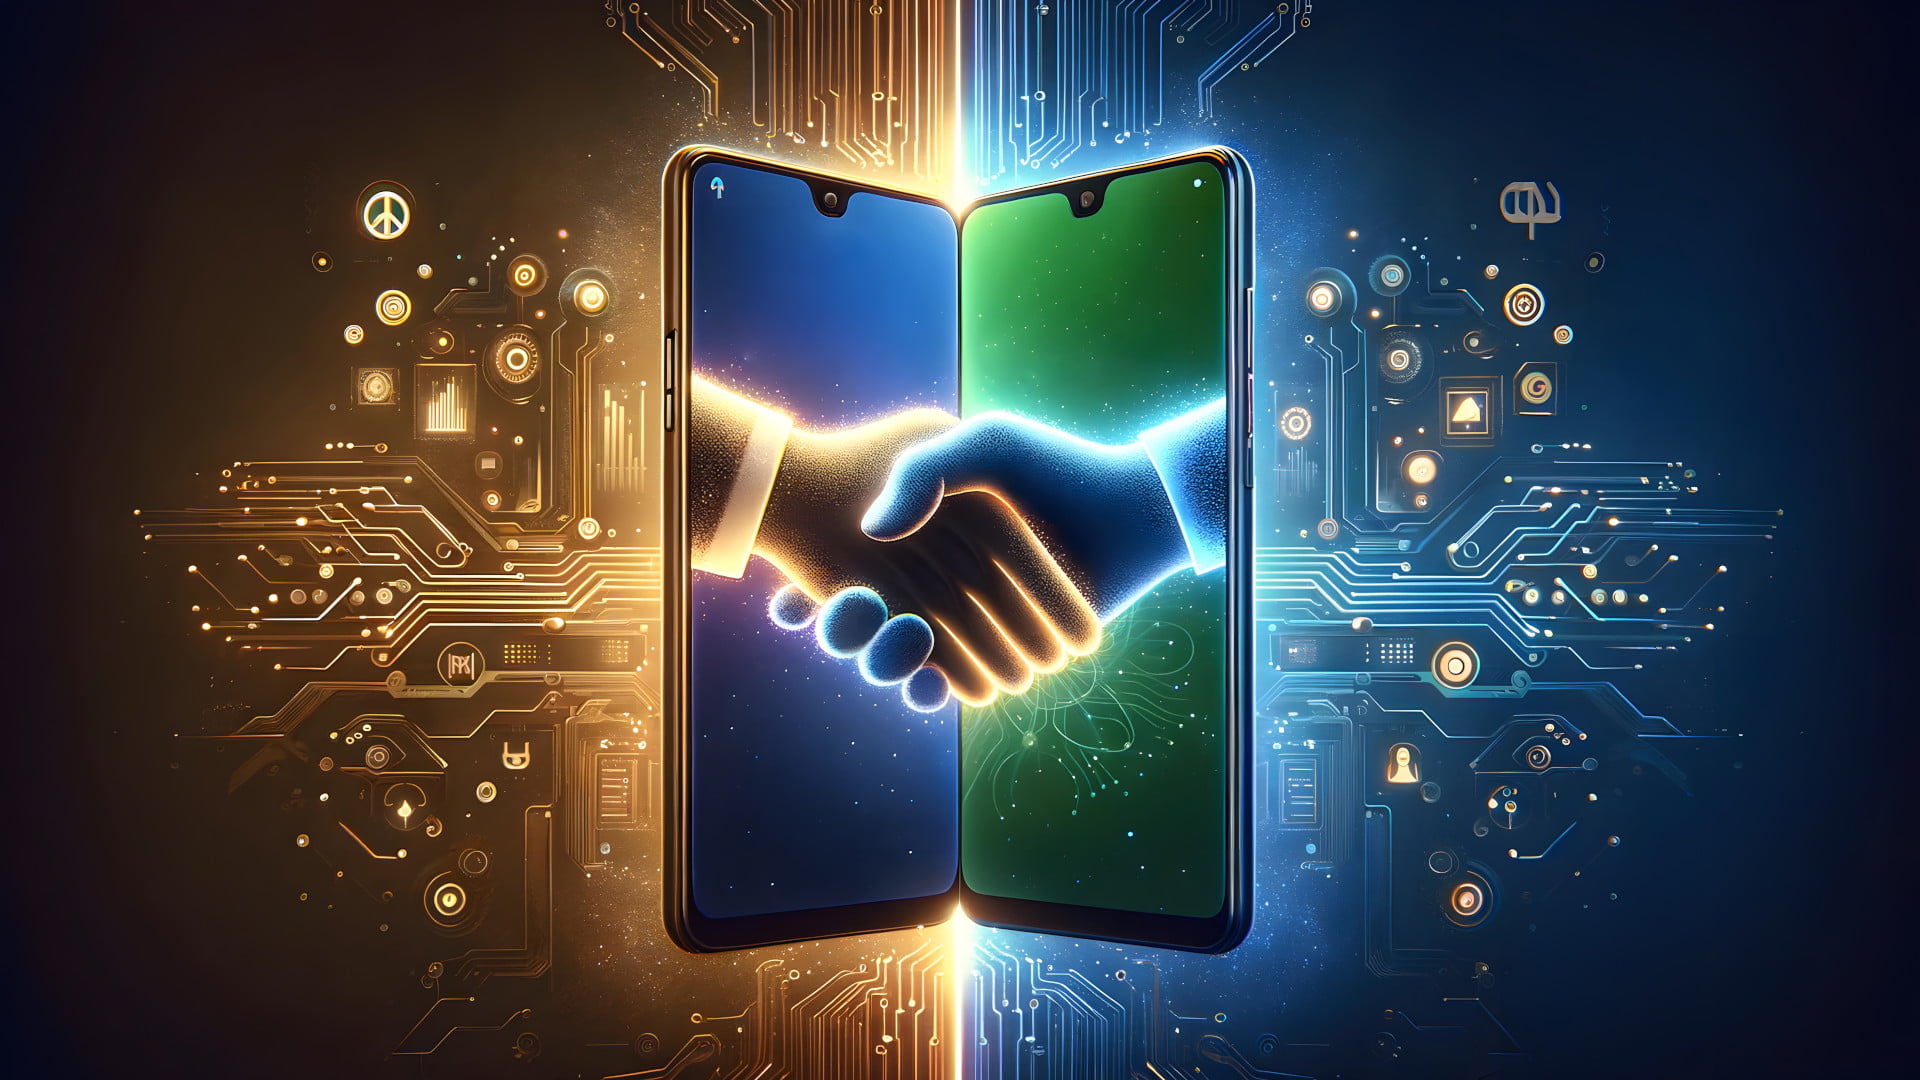 OPPO og Nokias to smartphones giver hinanden hånden og kommer til enighed